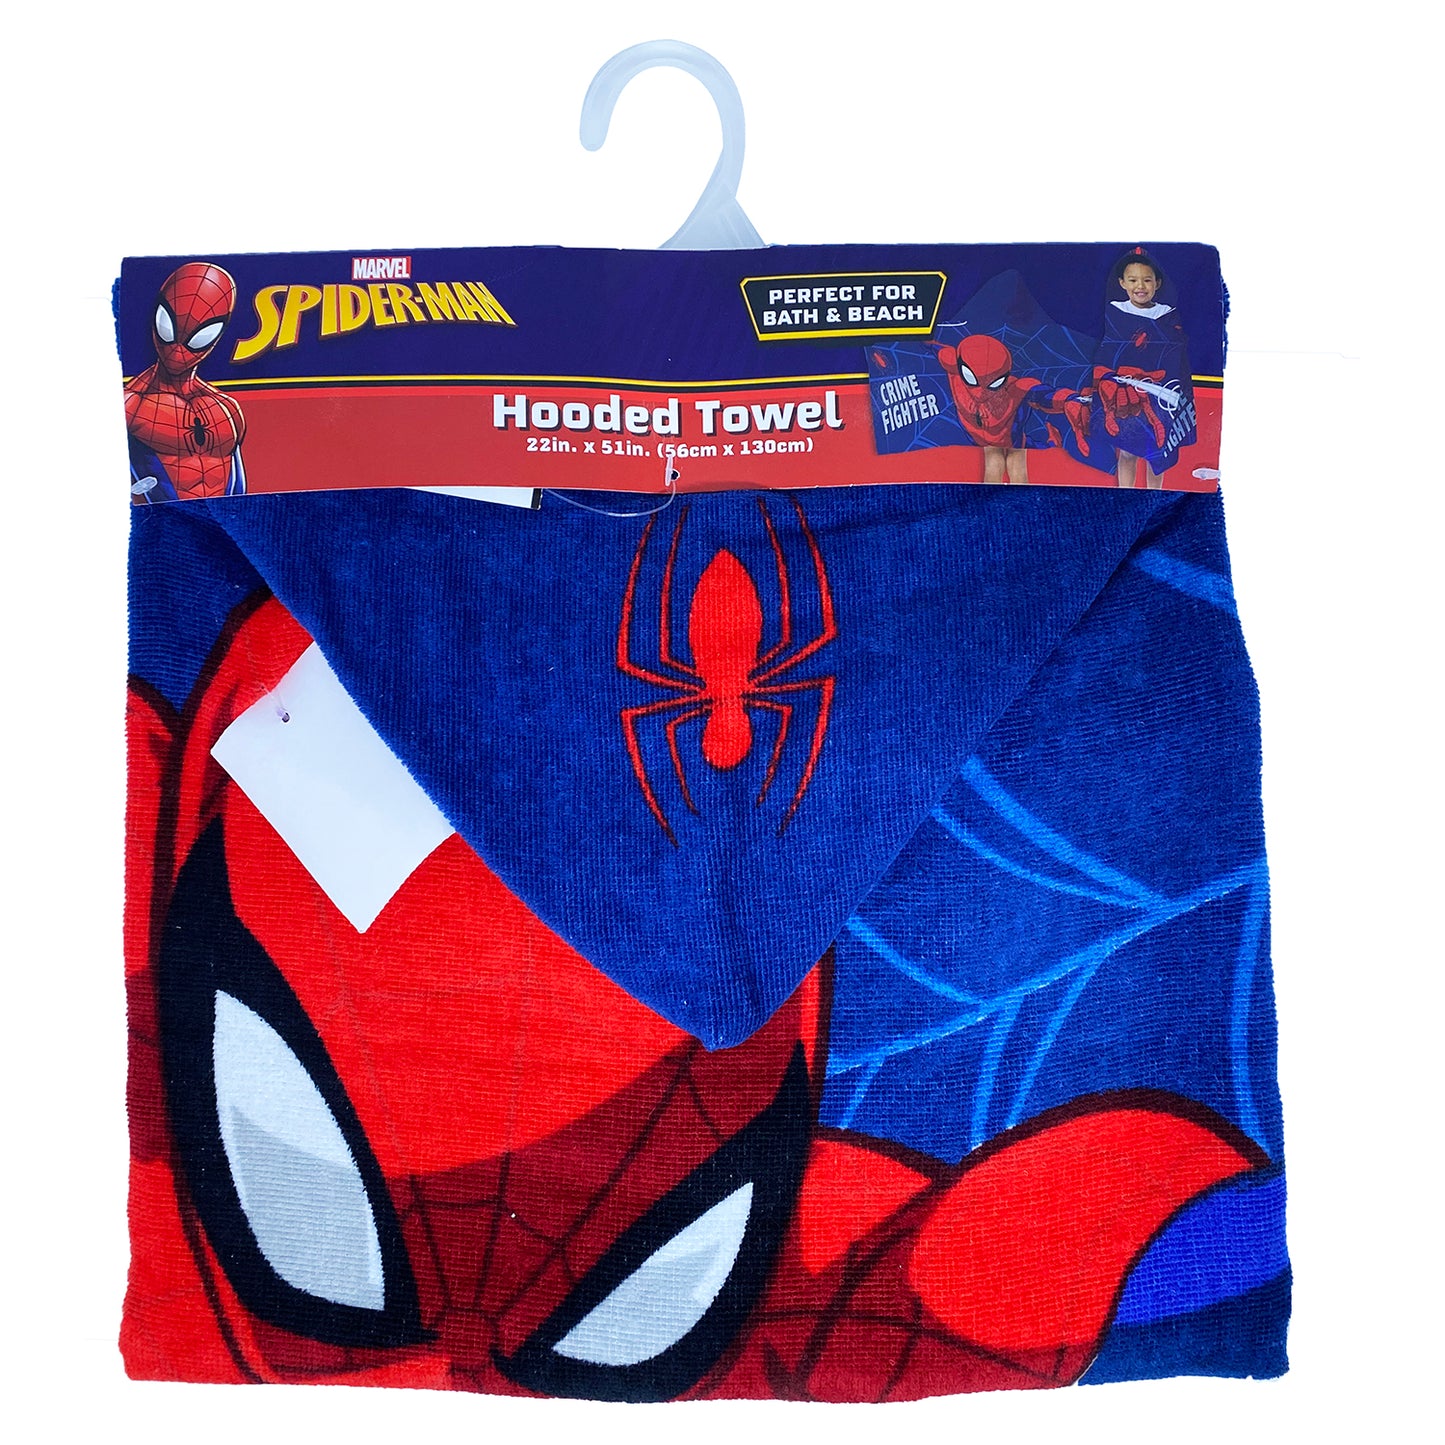 Marvel Spiderman Hooded Towel 22 in x 51 in